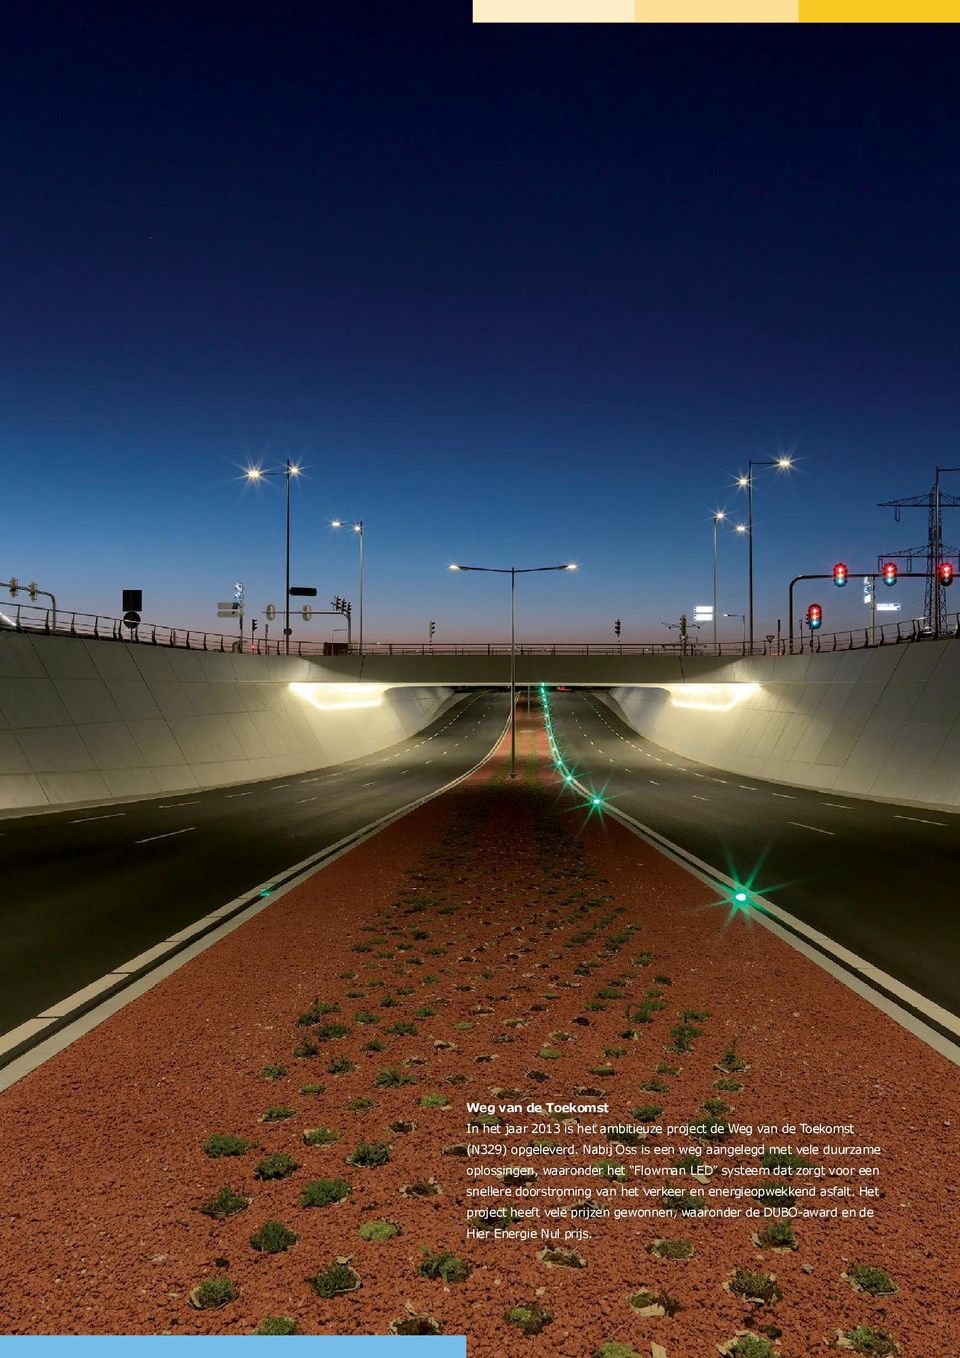 Nabij Oss is een weg aangelegd met vele duurzame oplossingen, waaronder het Flowman LED systeem